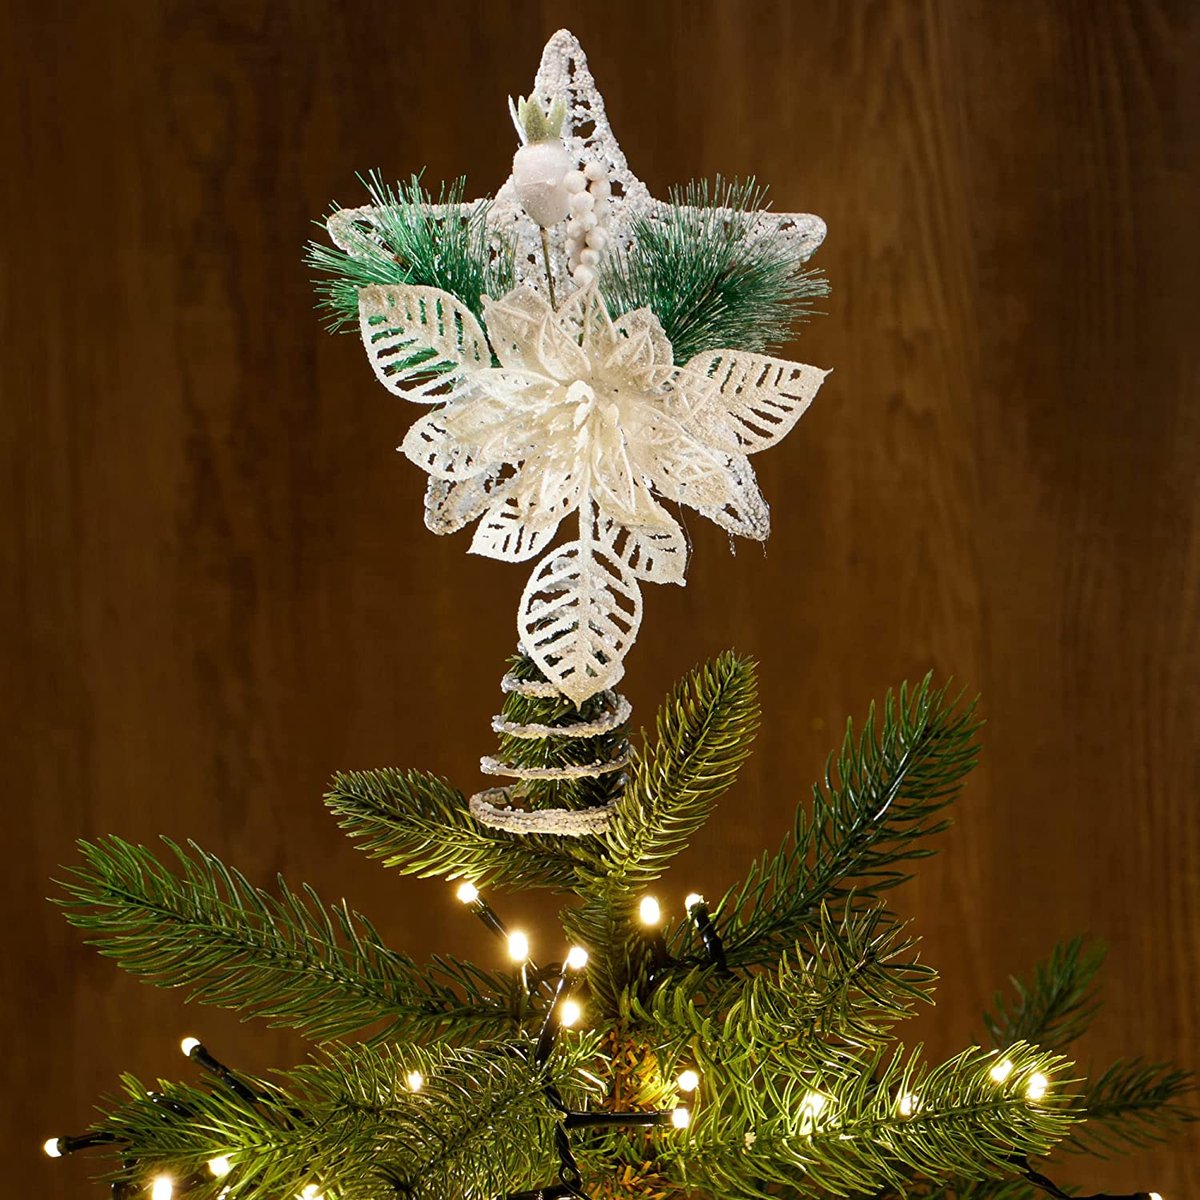 Decoratiester Kerstmis, kerstdecoratie metalen ster met decoratie, witte kerststerstandaard met dennennaald, bloem & bes